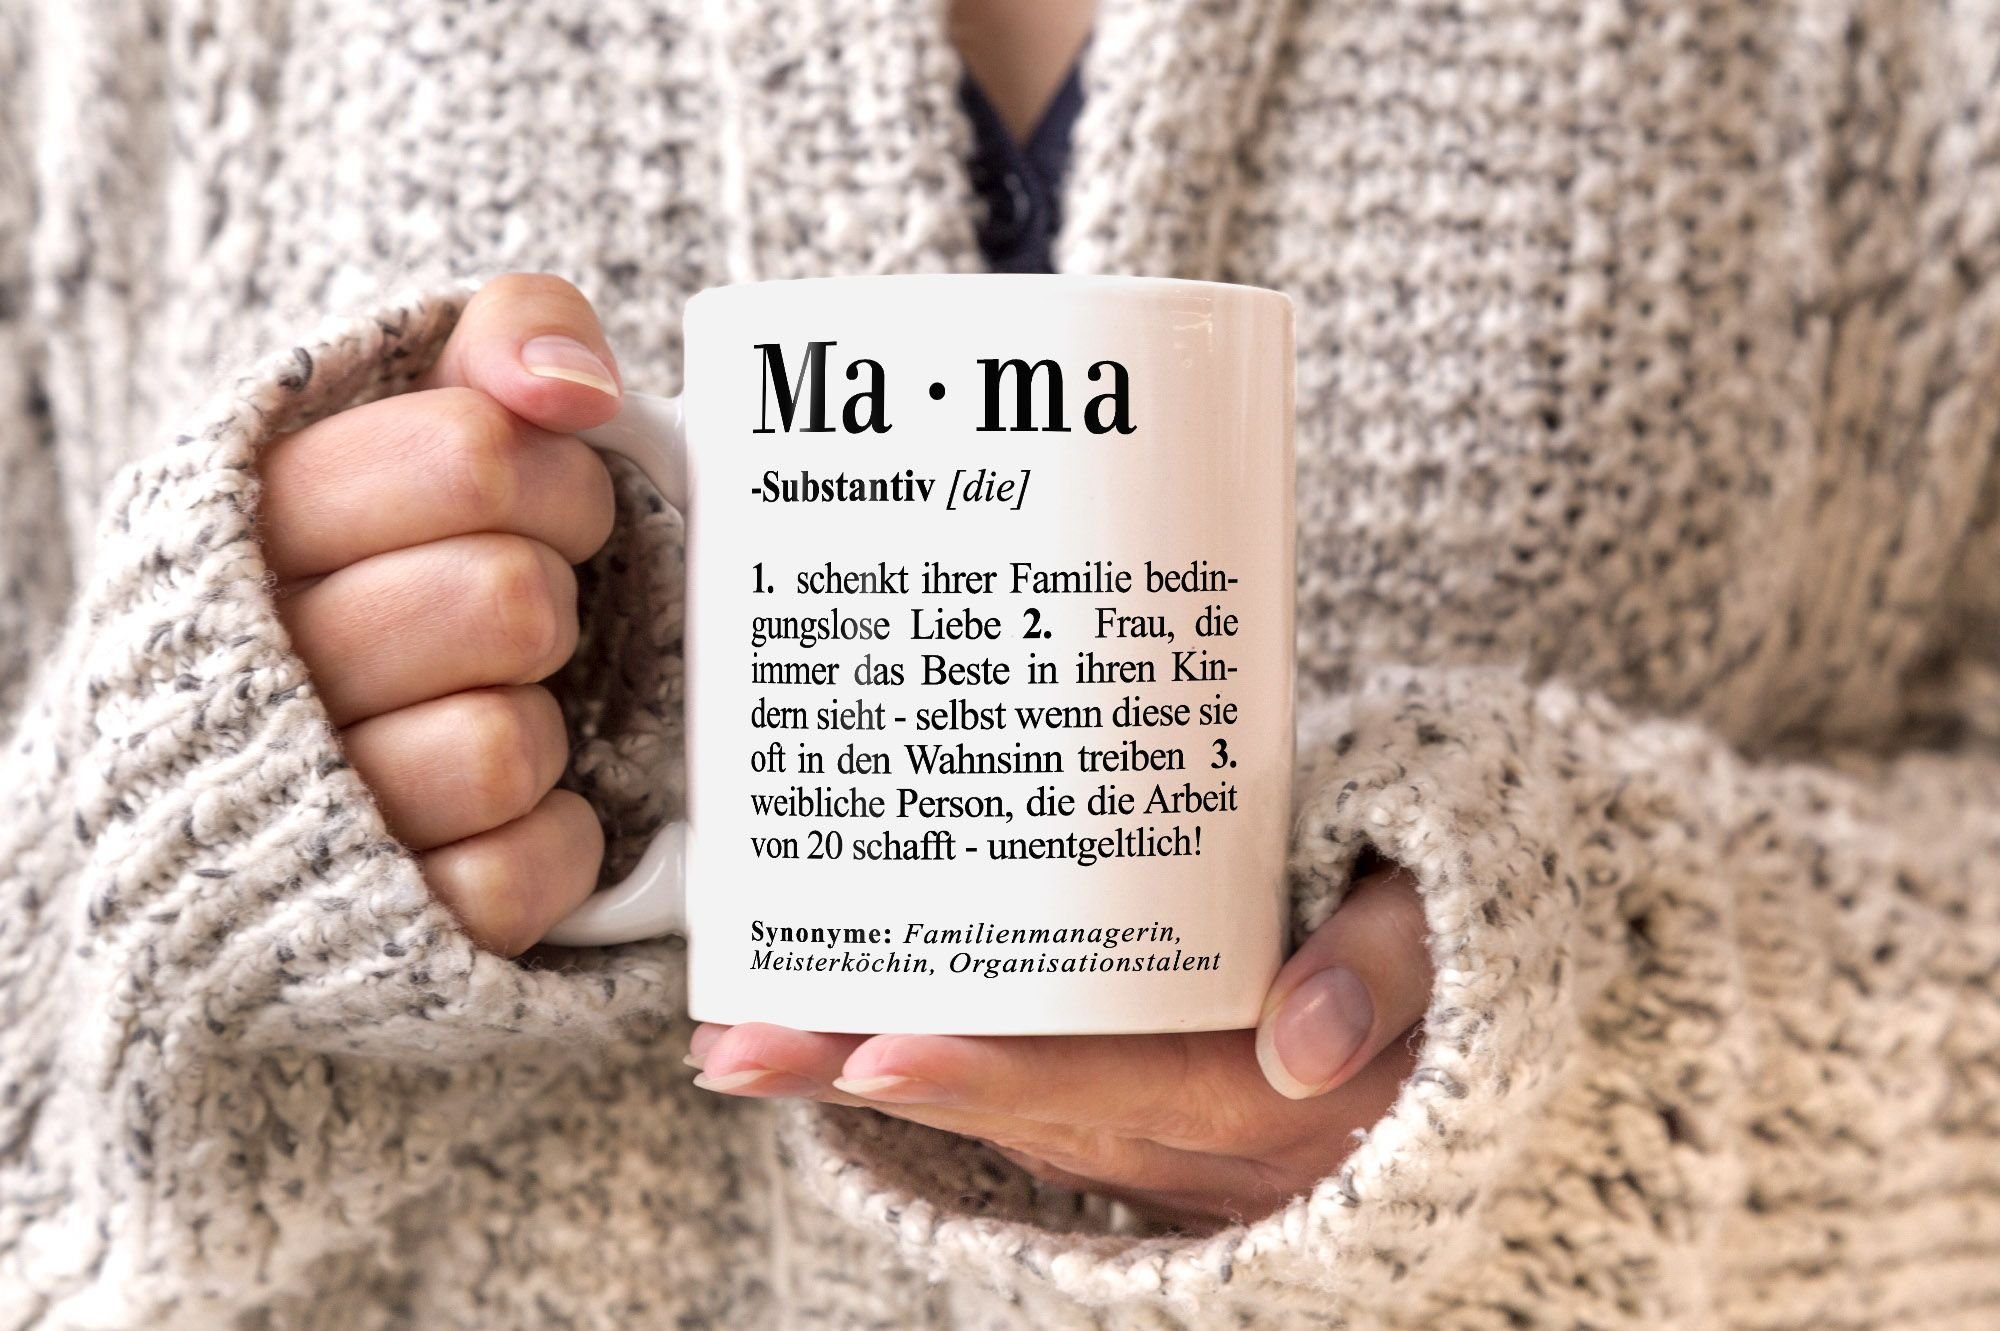 Keramik MoonWorks®, Dictionary Mama Definition für Tasse Wörterbuch MoonWorks Mutter Kaffee-Tasse Duden Geschenk Mama